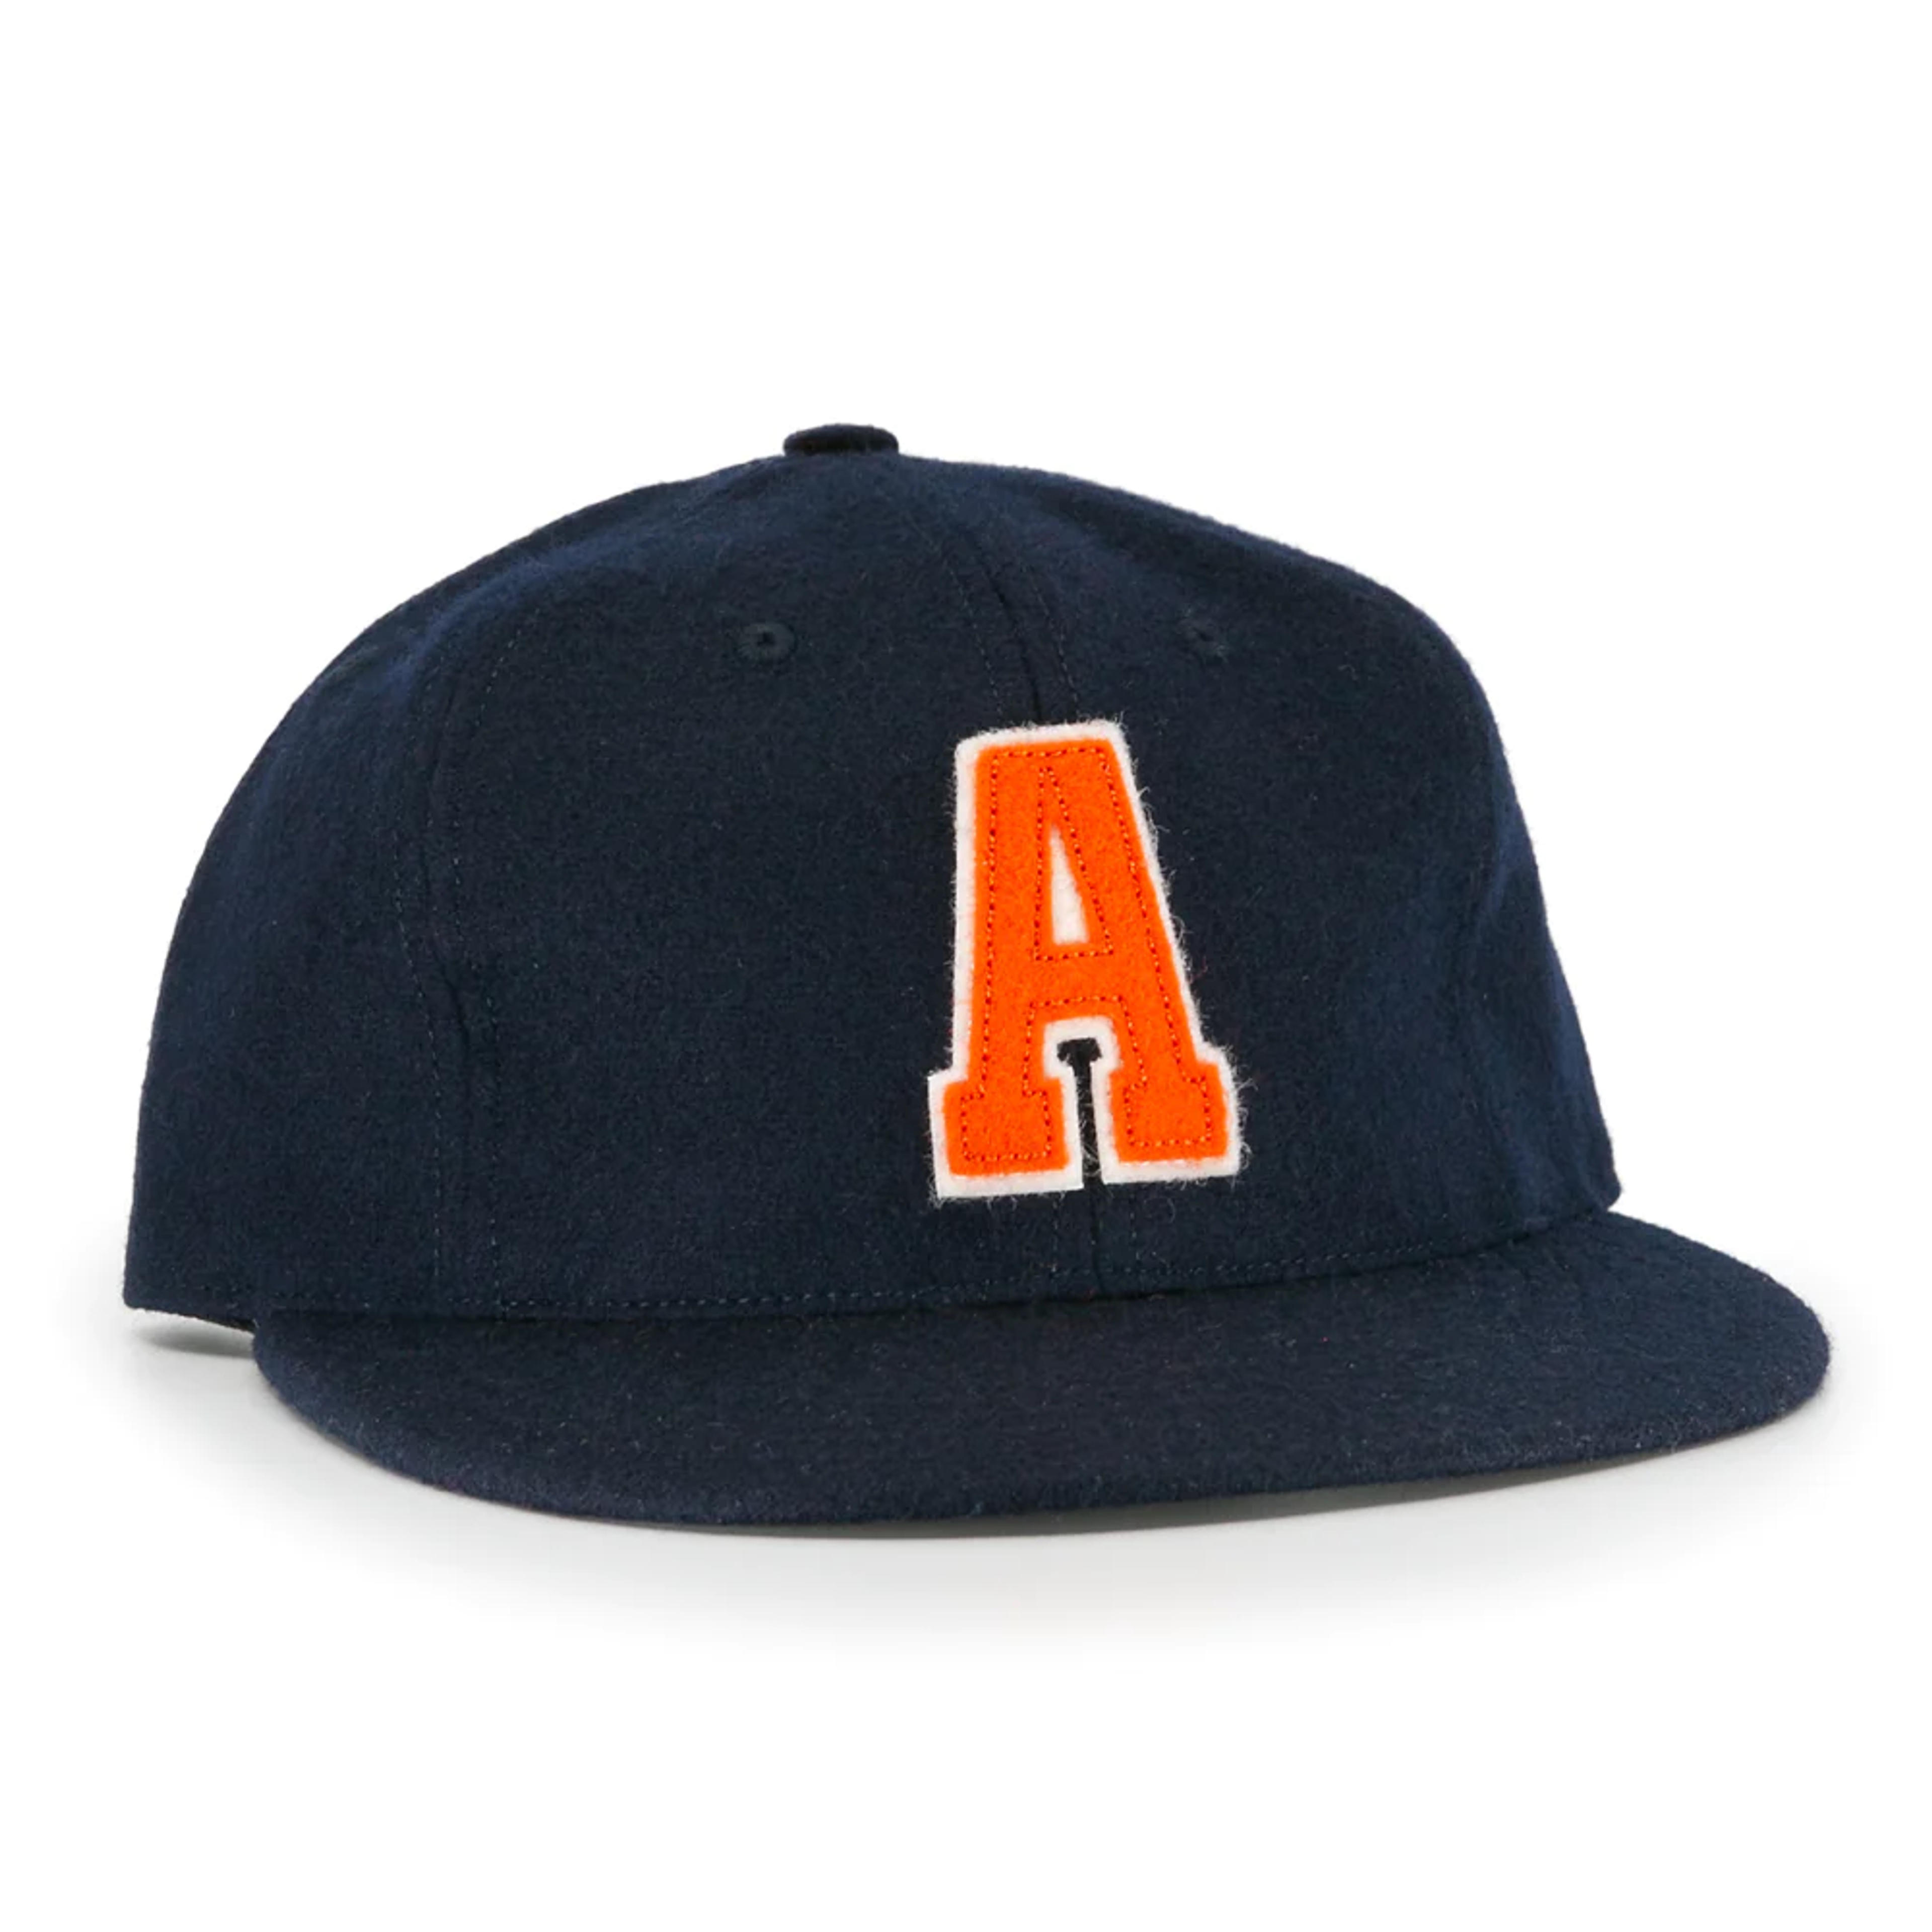 Auburn University 1966 Vintage Ballcap